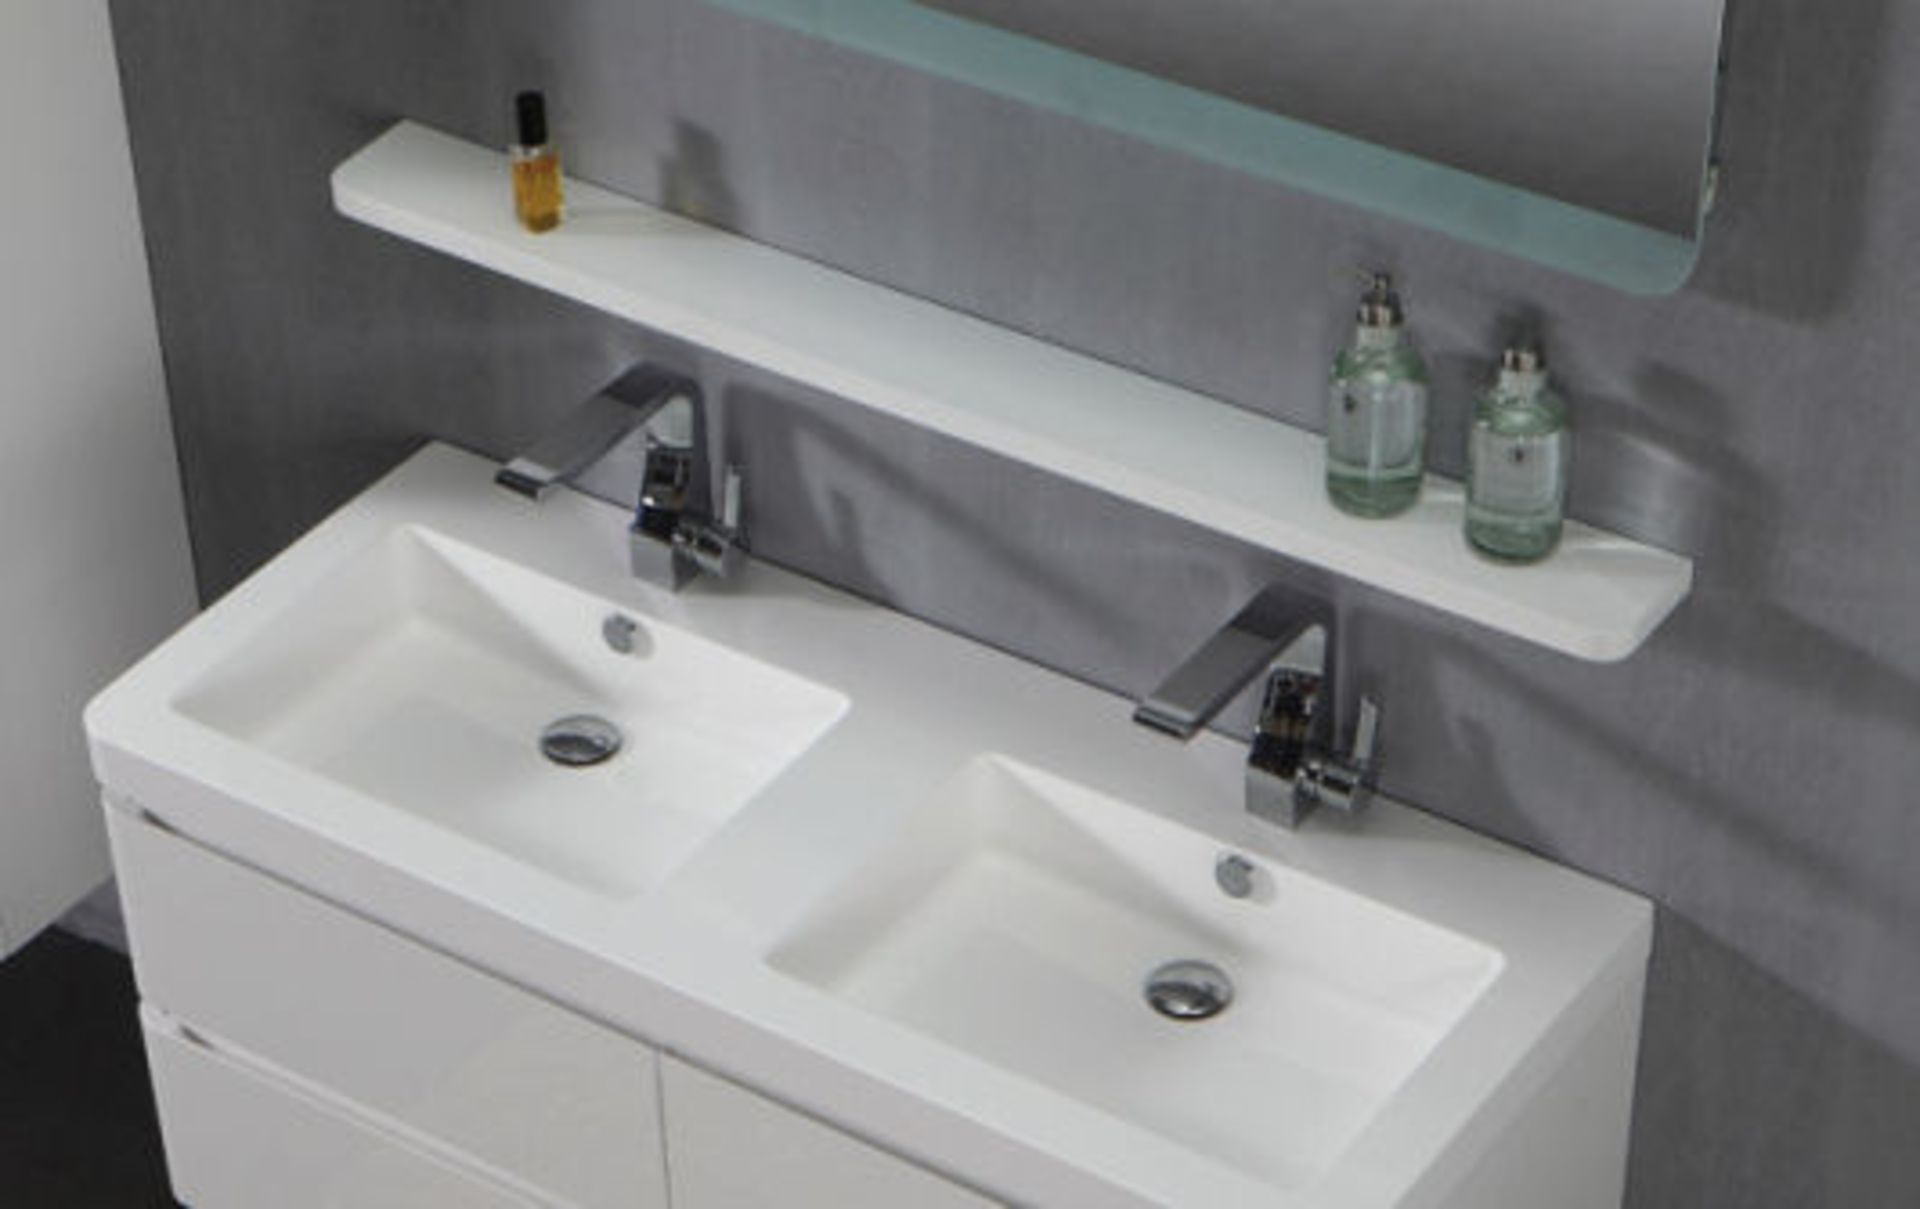 1 x Contemporary Bathroom Storage Shelf 120 - A-Grade - Ref:ASH120 - CL170 - Location: Nottingham - Image 2 of 3